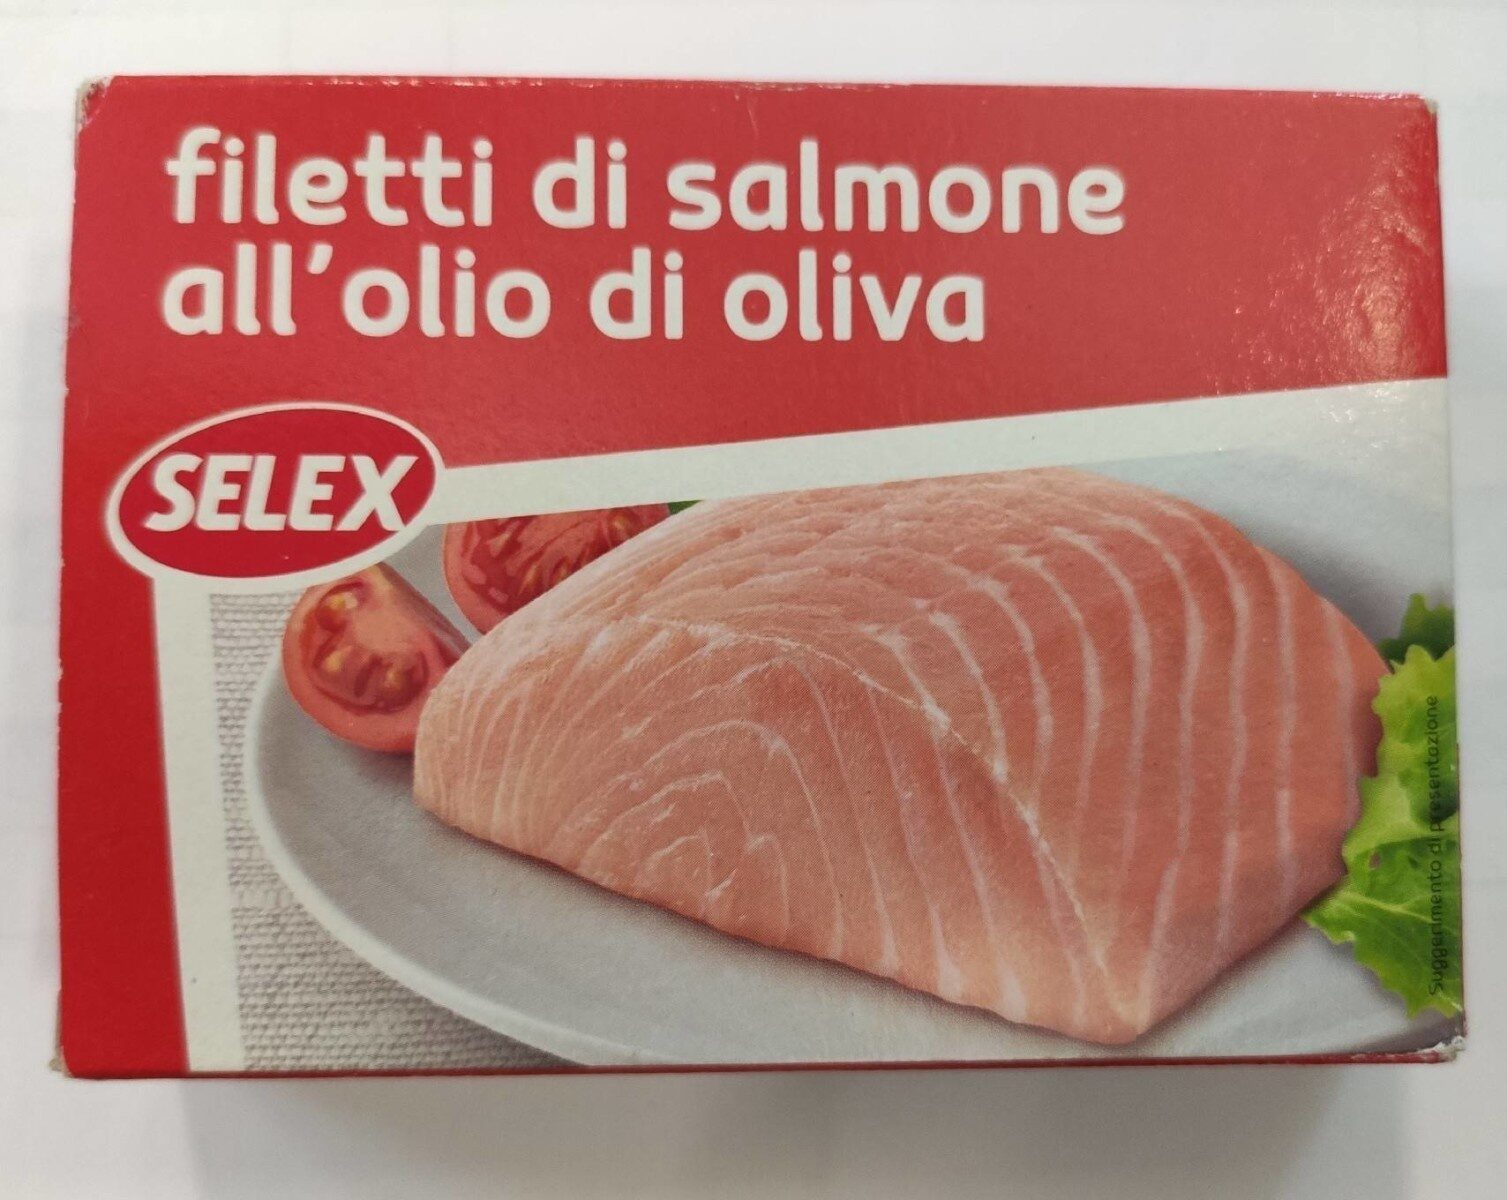 Filetti di salmone all'olio di oliva - Prodotto